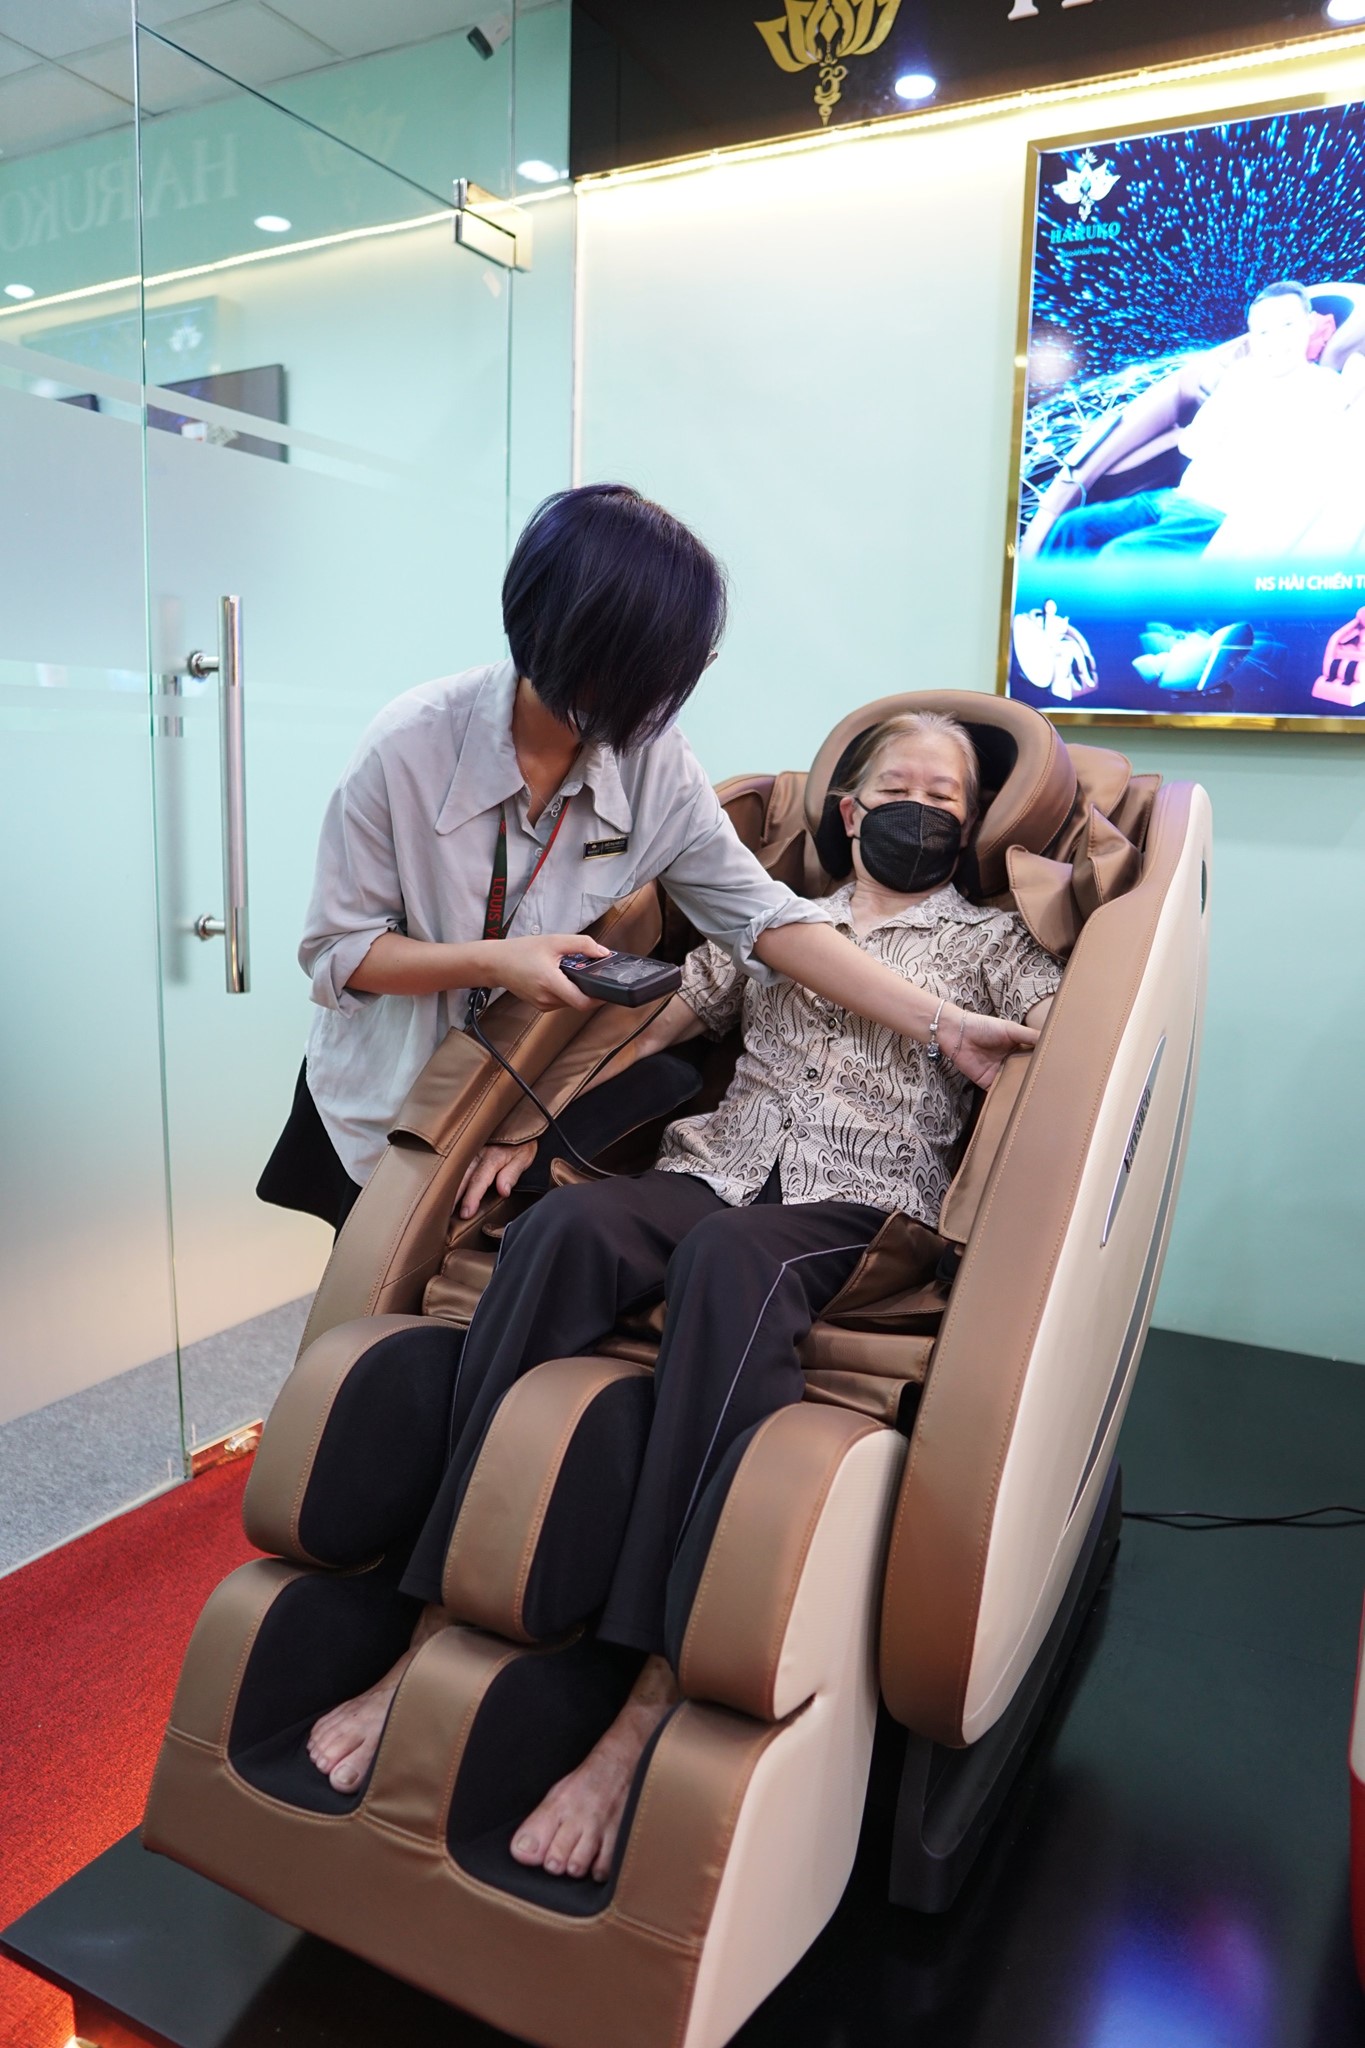 Đến với Akina bạn sẽ được trải nghiệm các sản phẩm ghế massage cao cấp và được tư vấn về sản phẩm mới nhất hiện nay